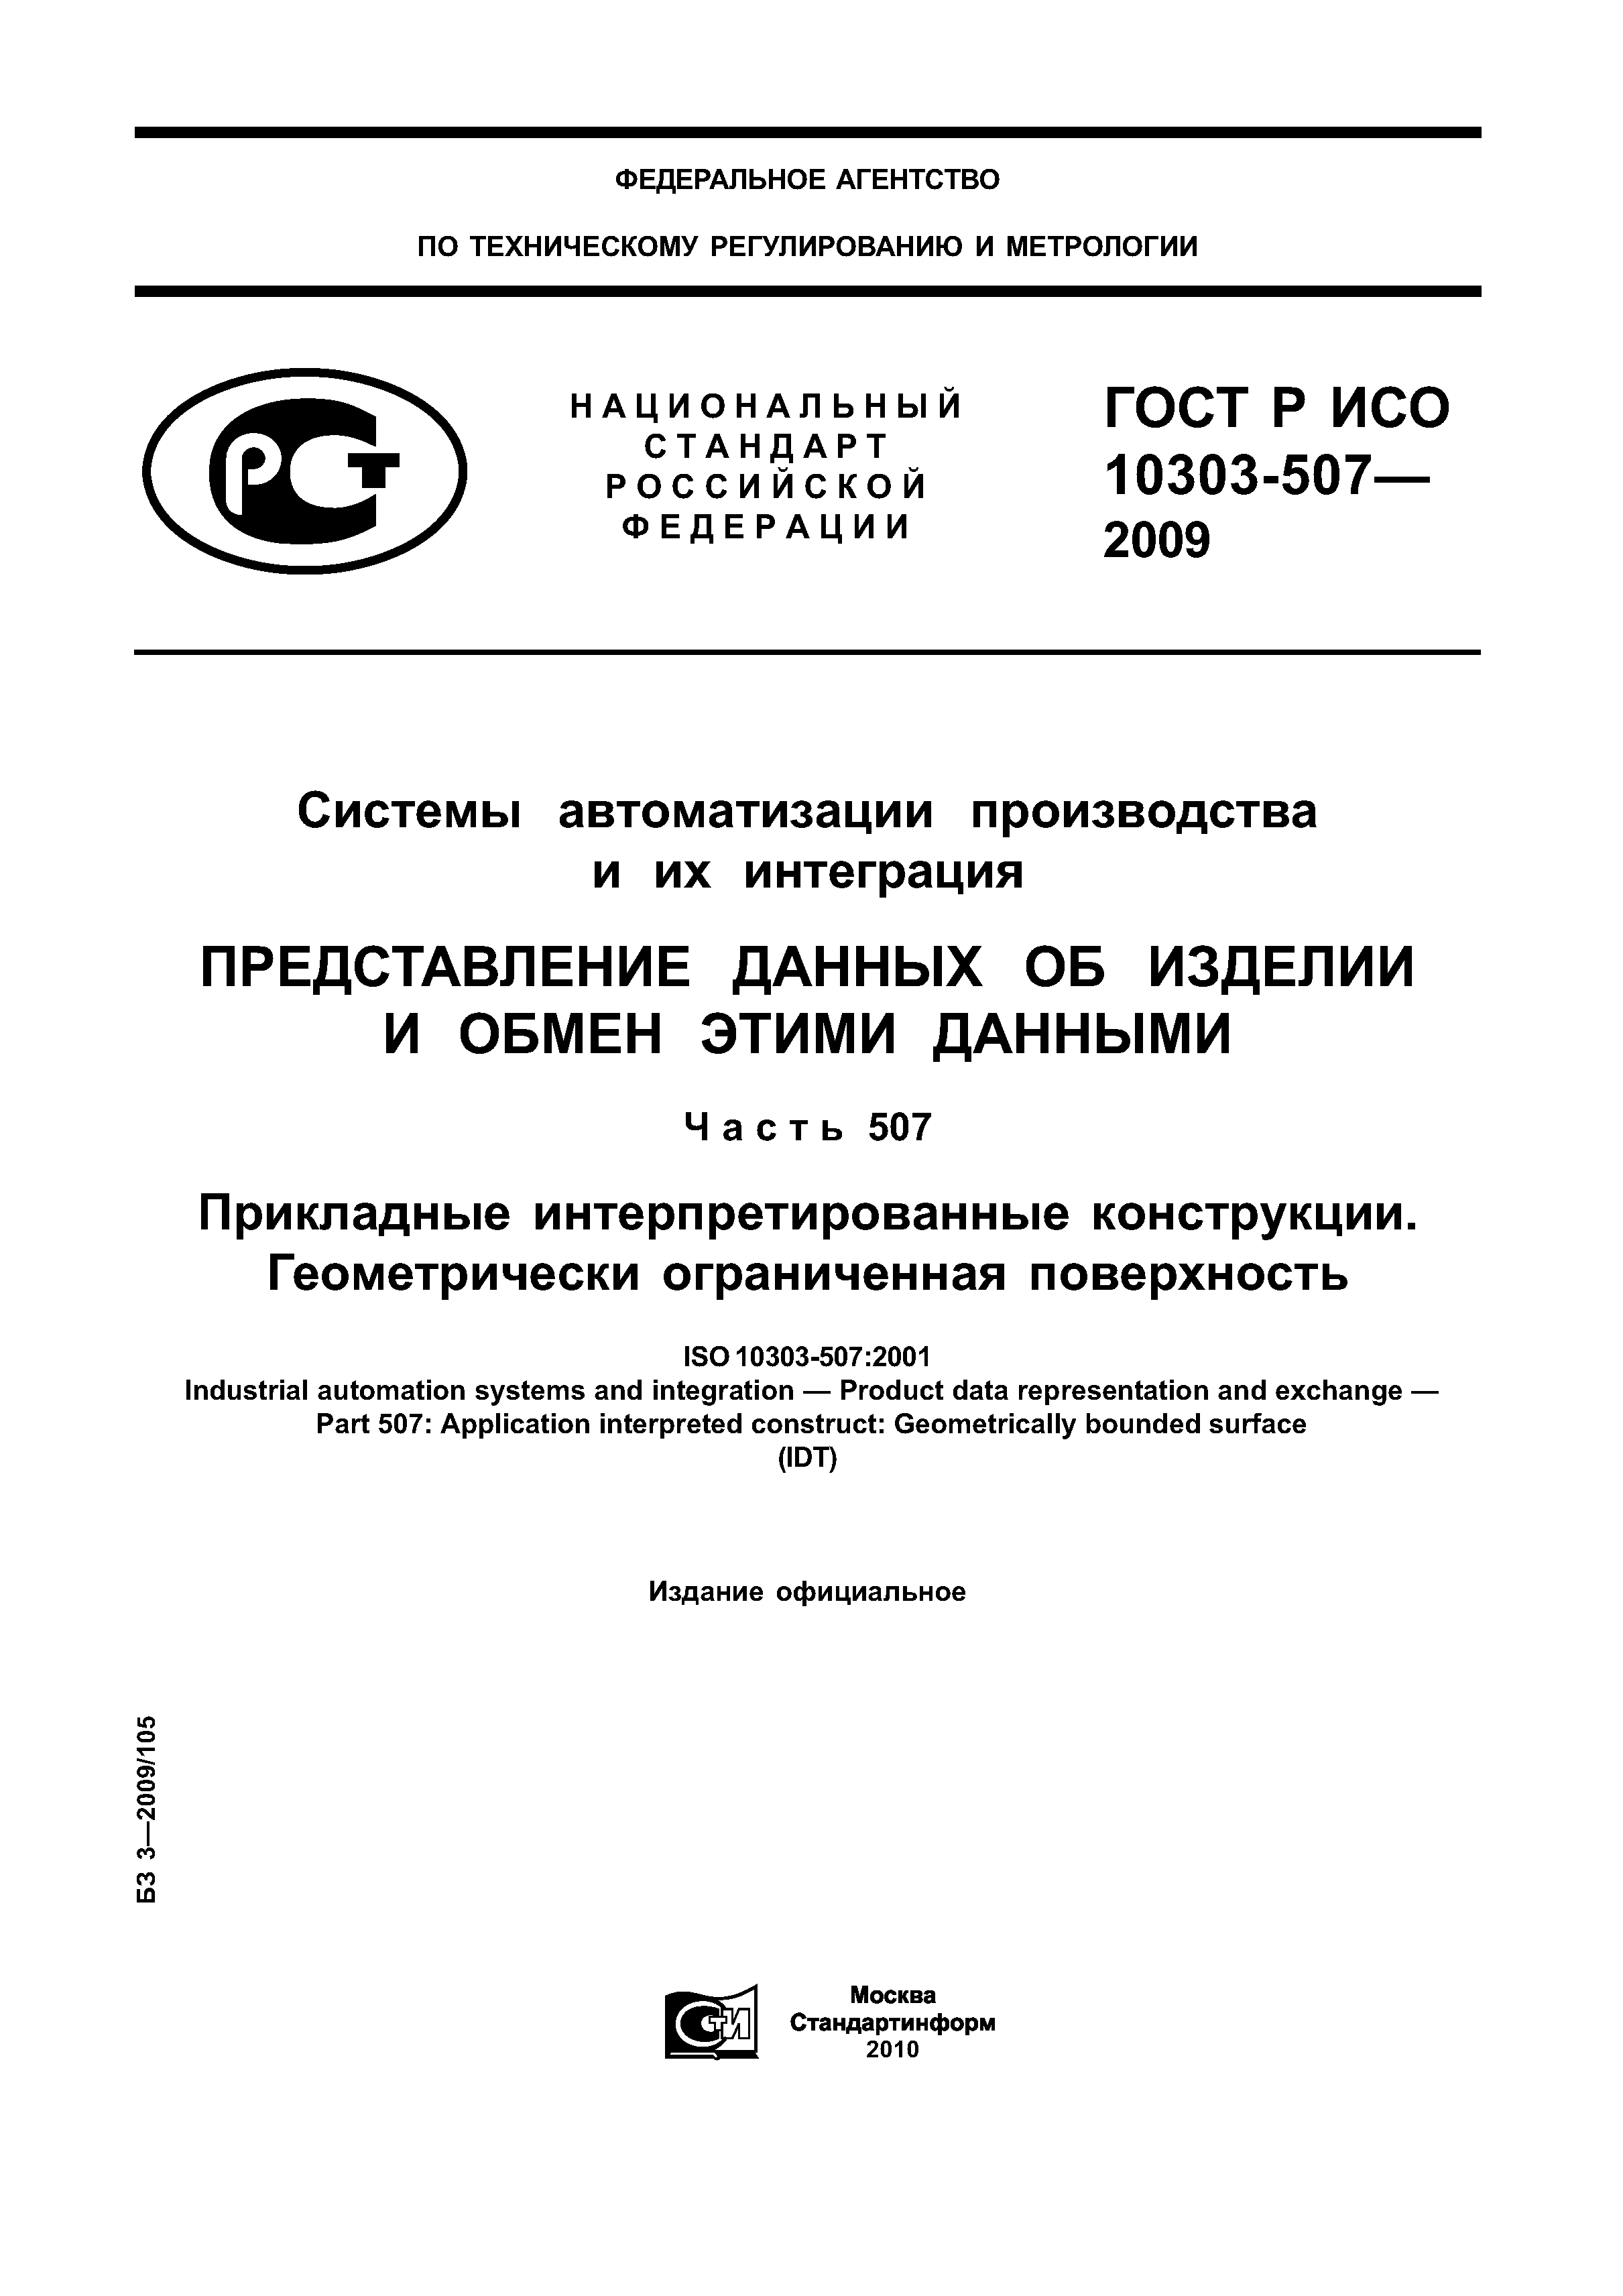 ГОСТ Р ИСО 10303-507-2009